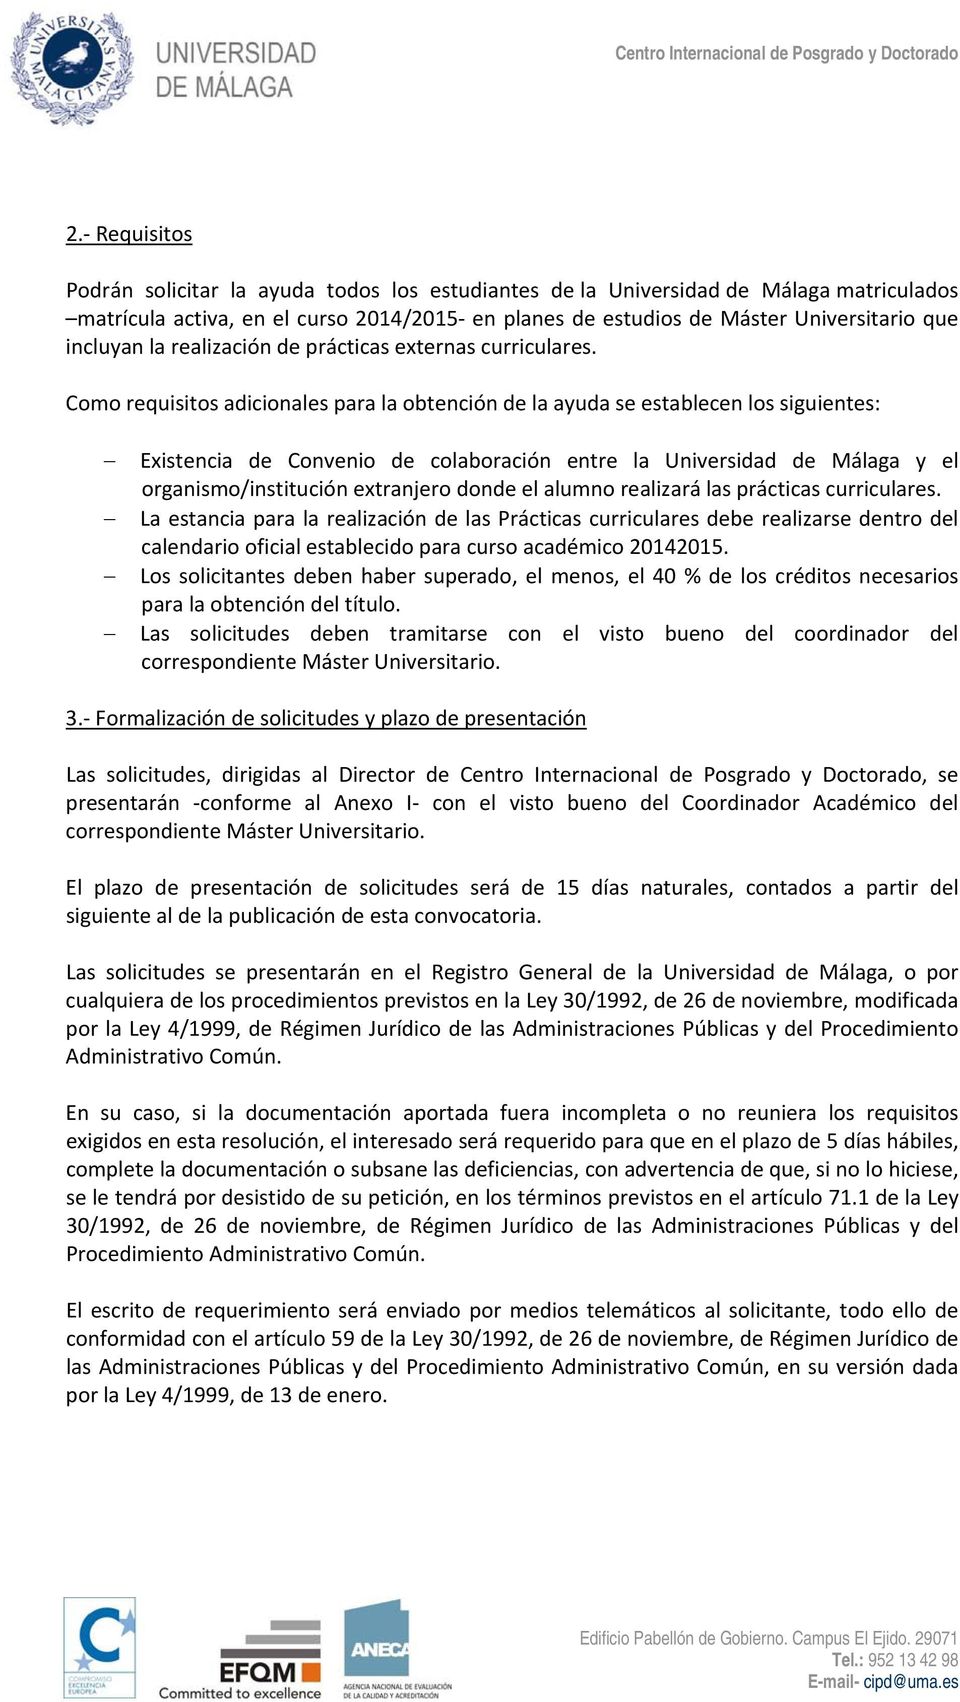 Como requisitos adicionales para la obtención de la ayuda se establecen los siguientes: Existencia de Convenio de colaboración entre la Universidad de Málaga y el organismo/institución extranjero